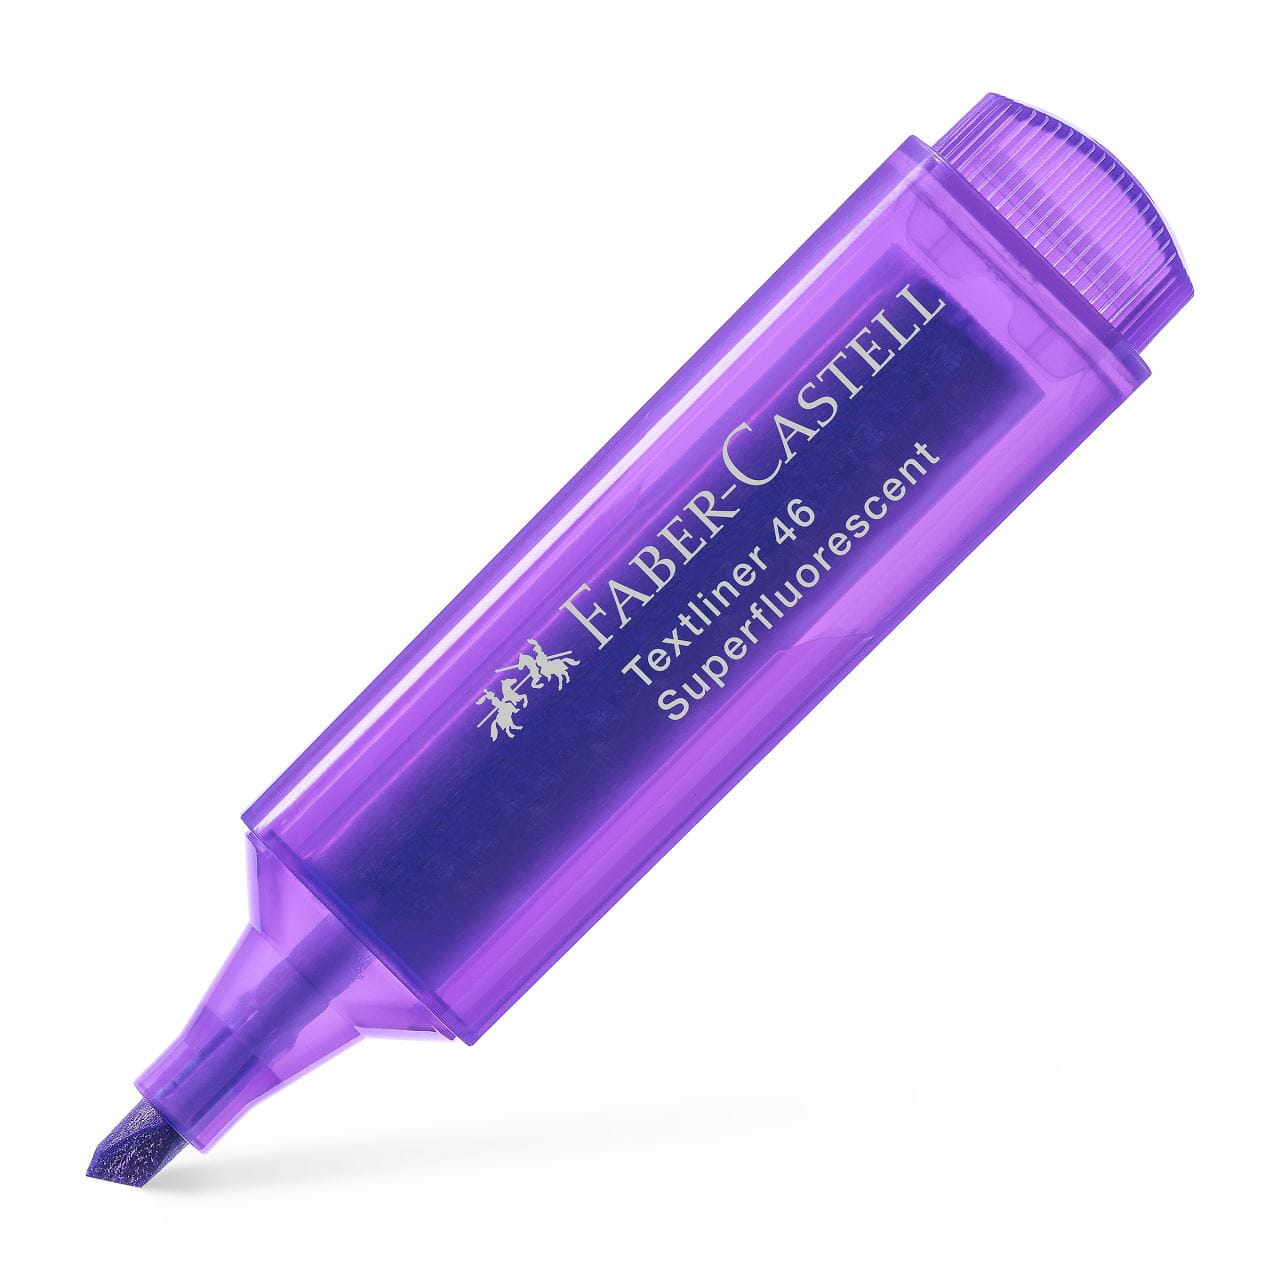 Faber-Castell - Textliner 46 Superflourescent, violet